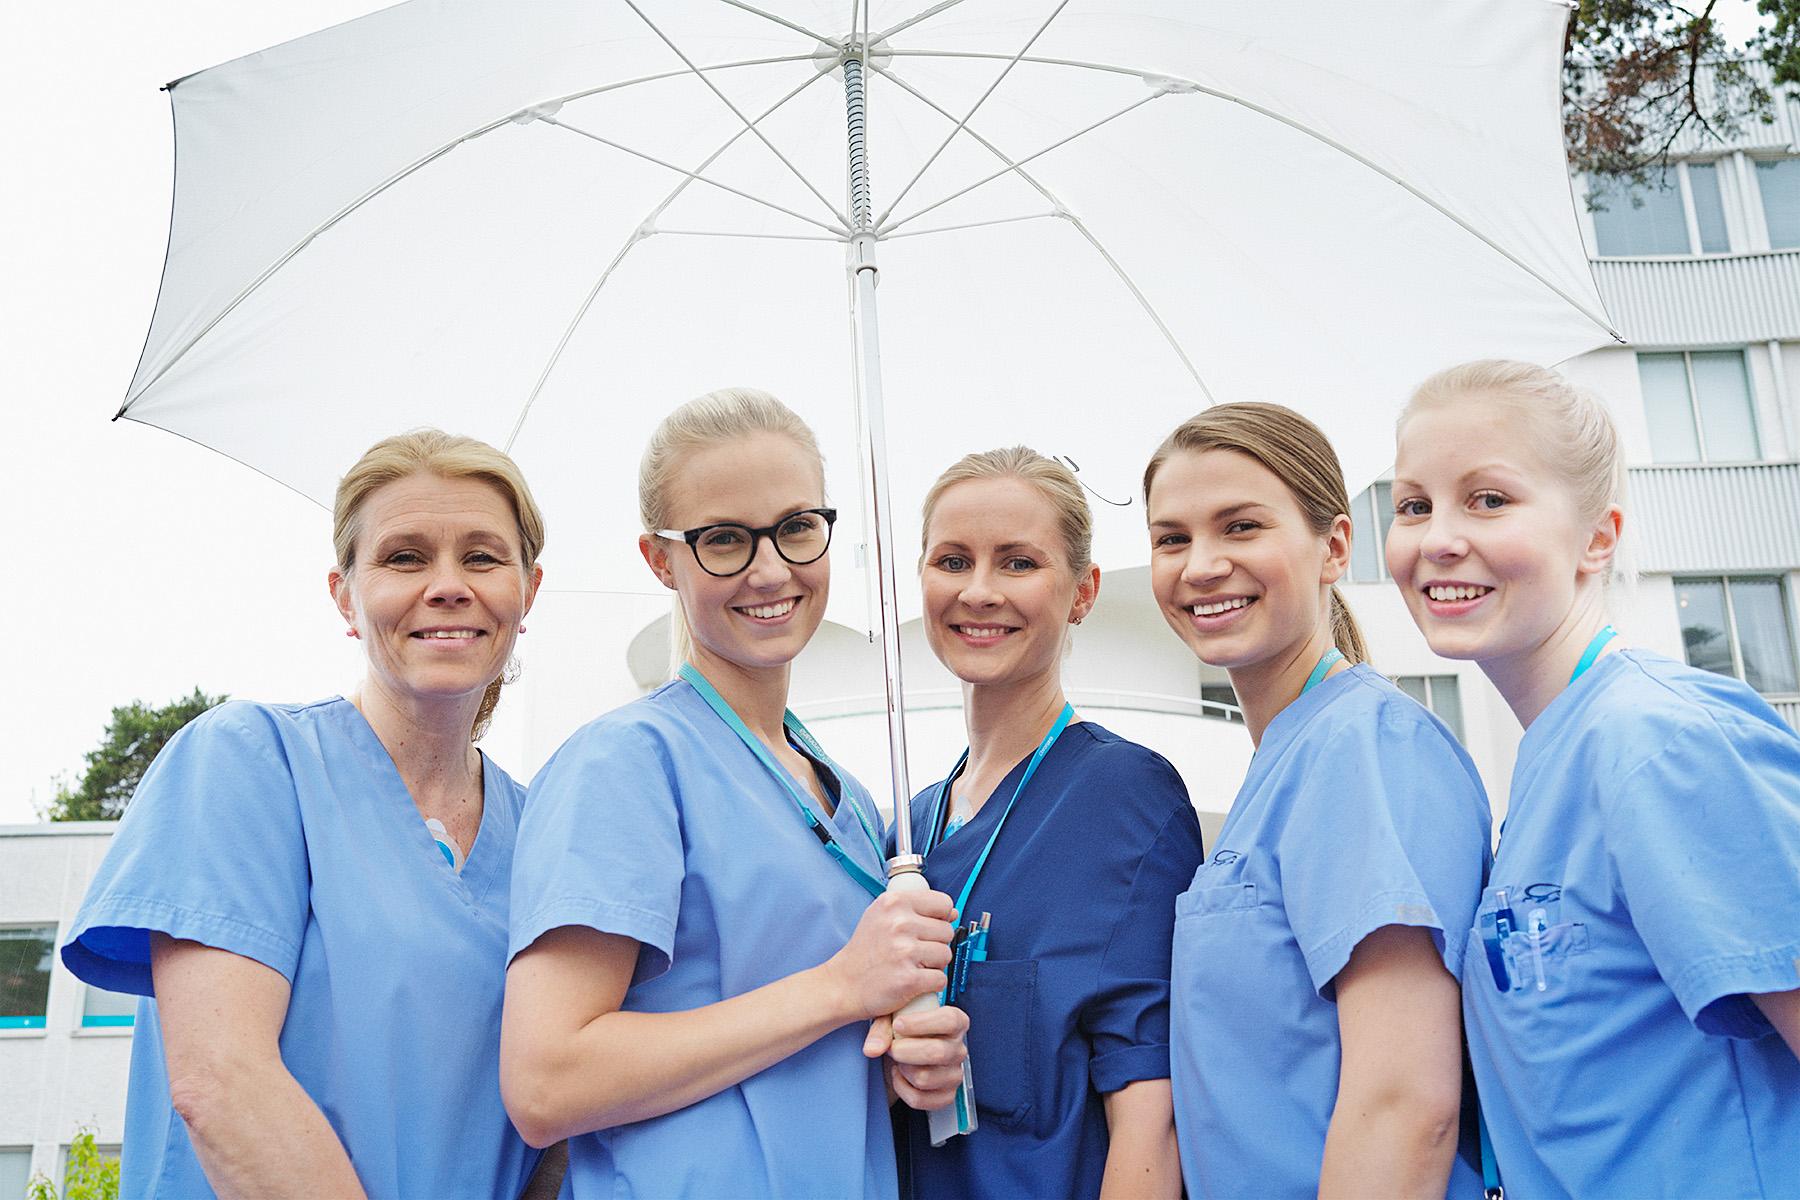 Viisi naispuolista hoitajaa seisoo ulkona sateenvarjon alla ja hymyilee.